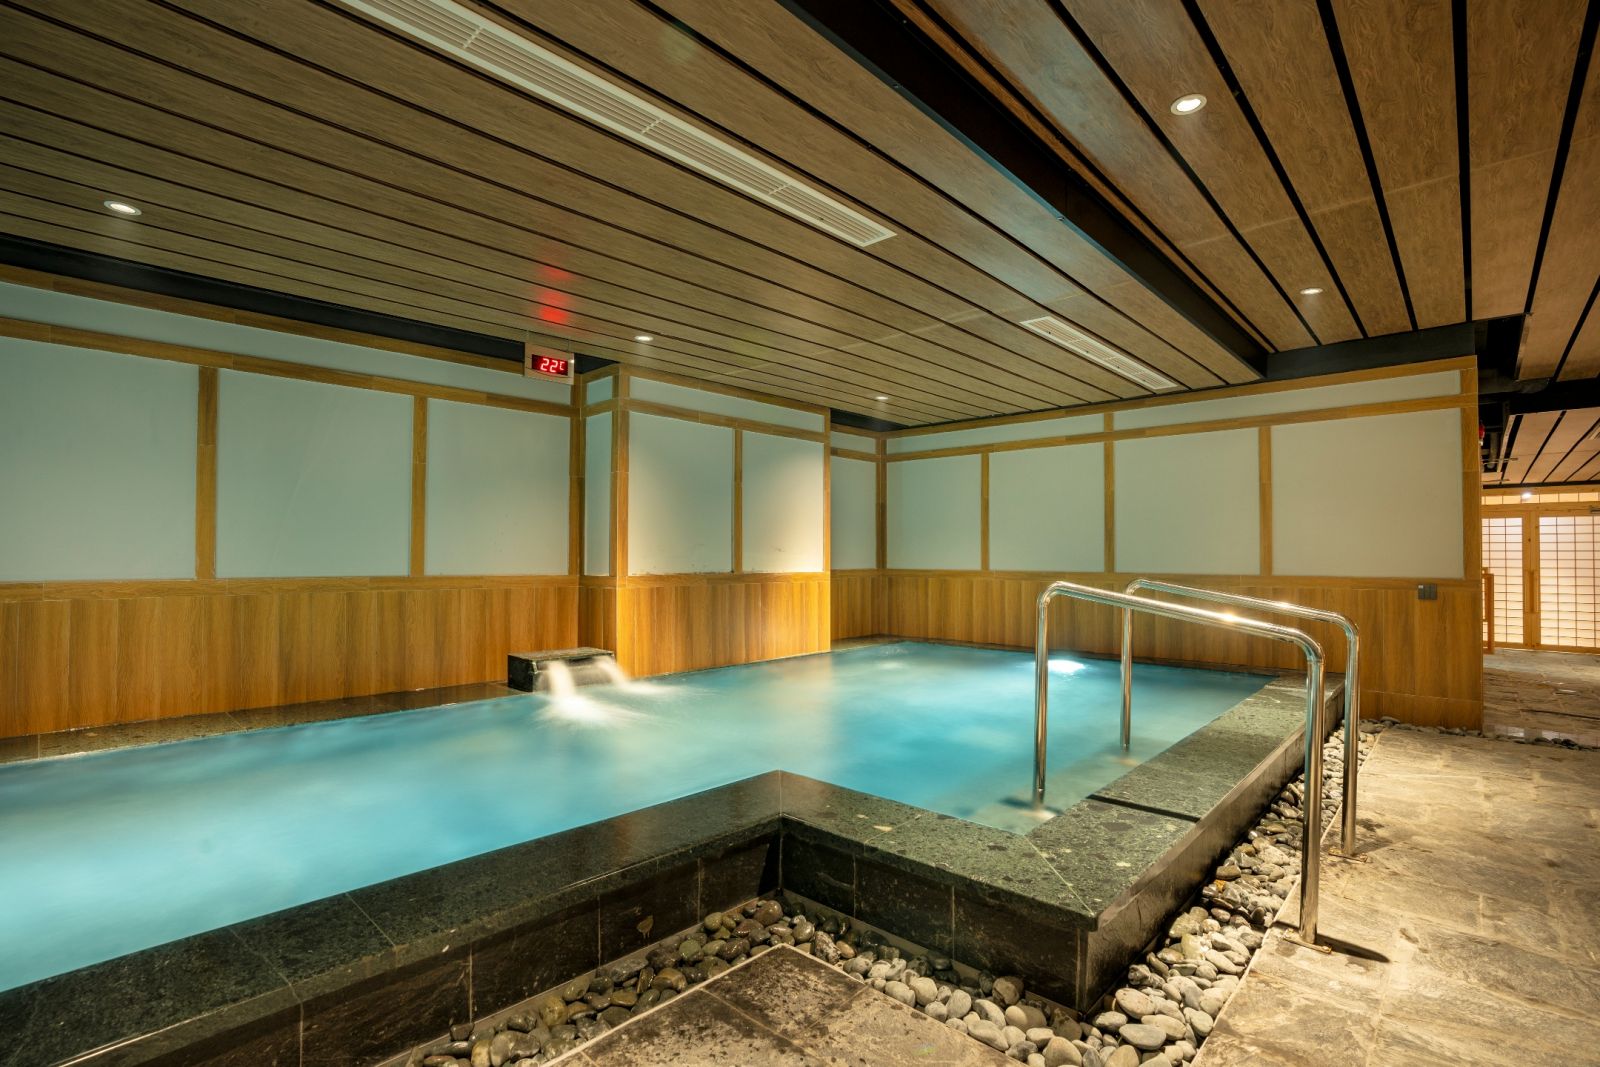 Hệ thống 7 bể tắm của Ruriko Onsen bao gồm bể tắm tráng, bể ngâm khoáng hoàn nguyên, bể sục Jacuzzi, bể sục bọt khí Nano, bể ngâm toàn thân, bể ngâm chân kết hợp và bể ngâm lạnh